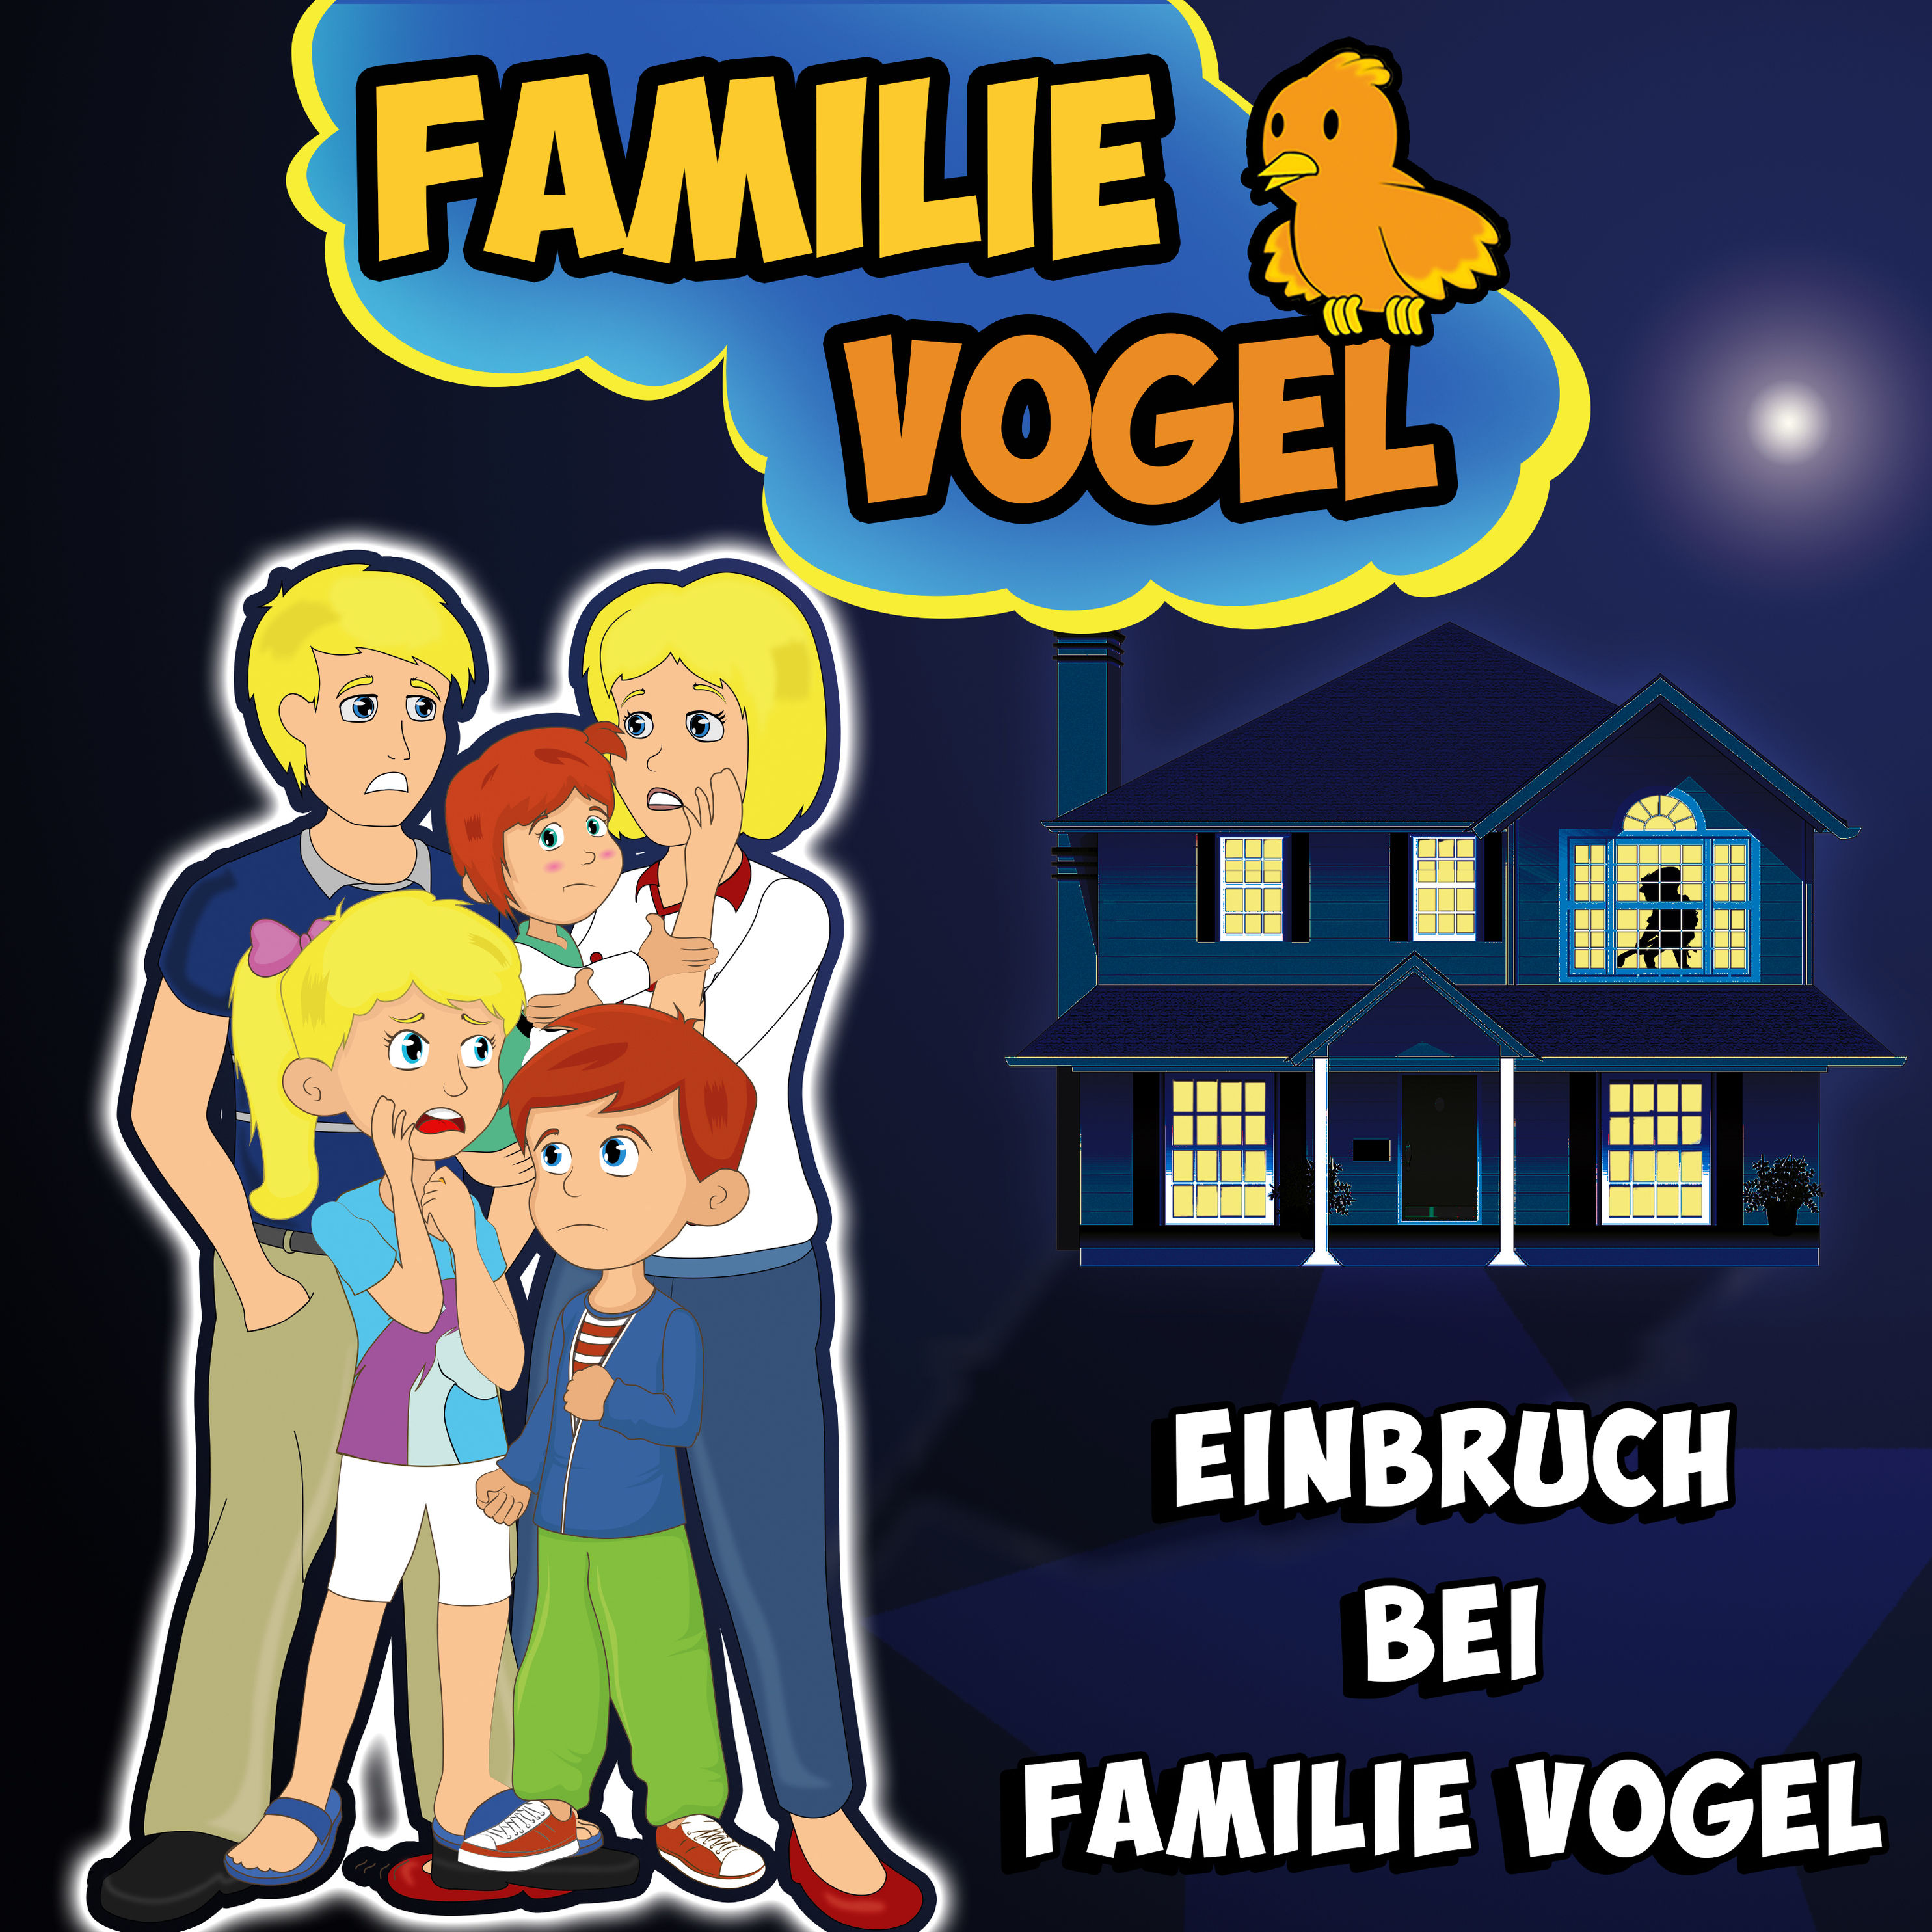 Einbruch bei Familie Vogel Hörbuch downloaden bei Weltbild.de